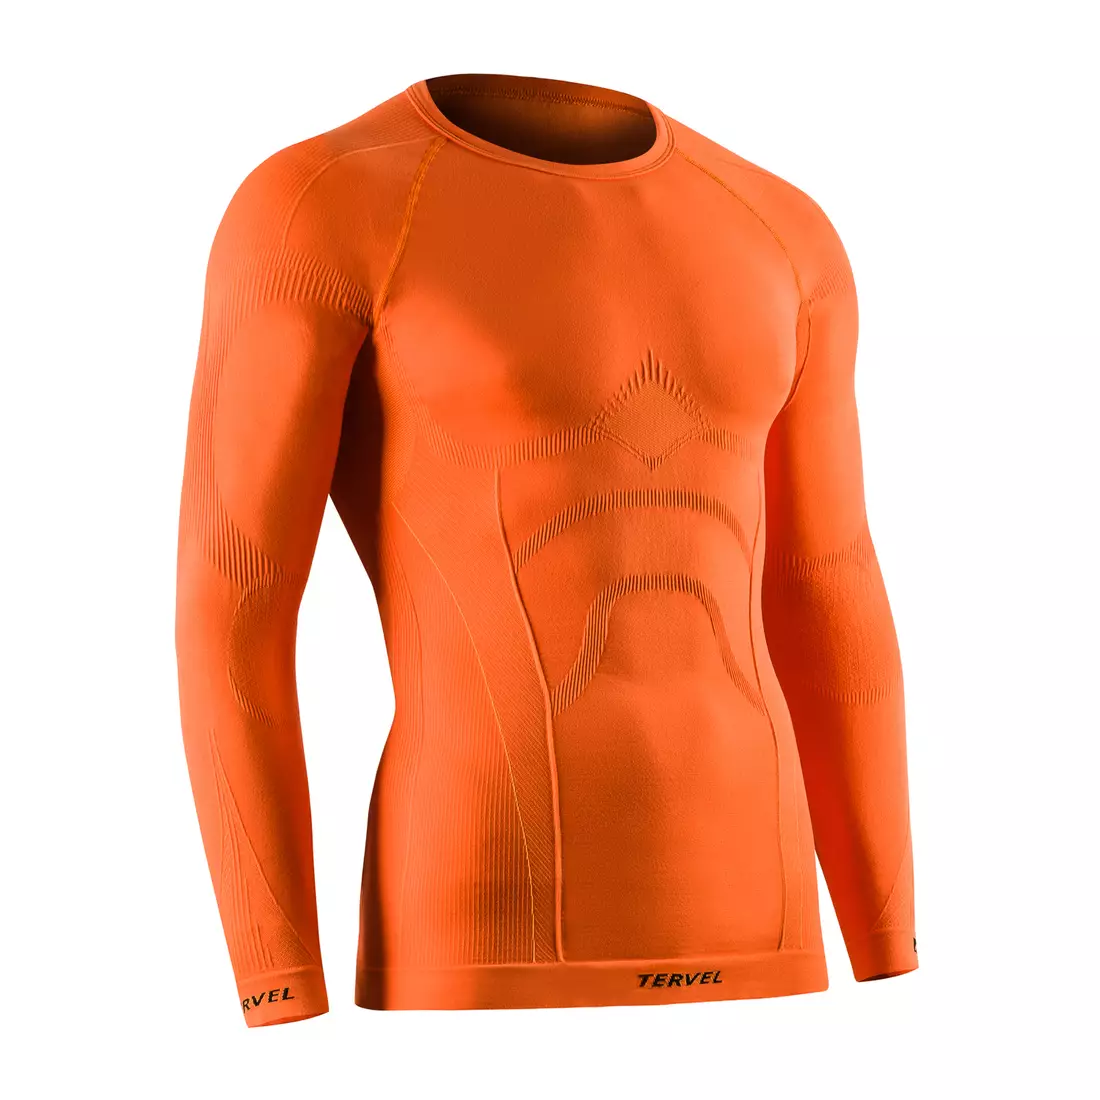 TERVEL COMFORTLINE 1002 - men's thermal T-shirt, long sleeve, color: Orange